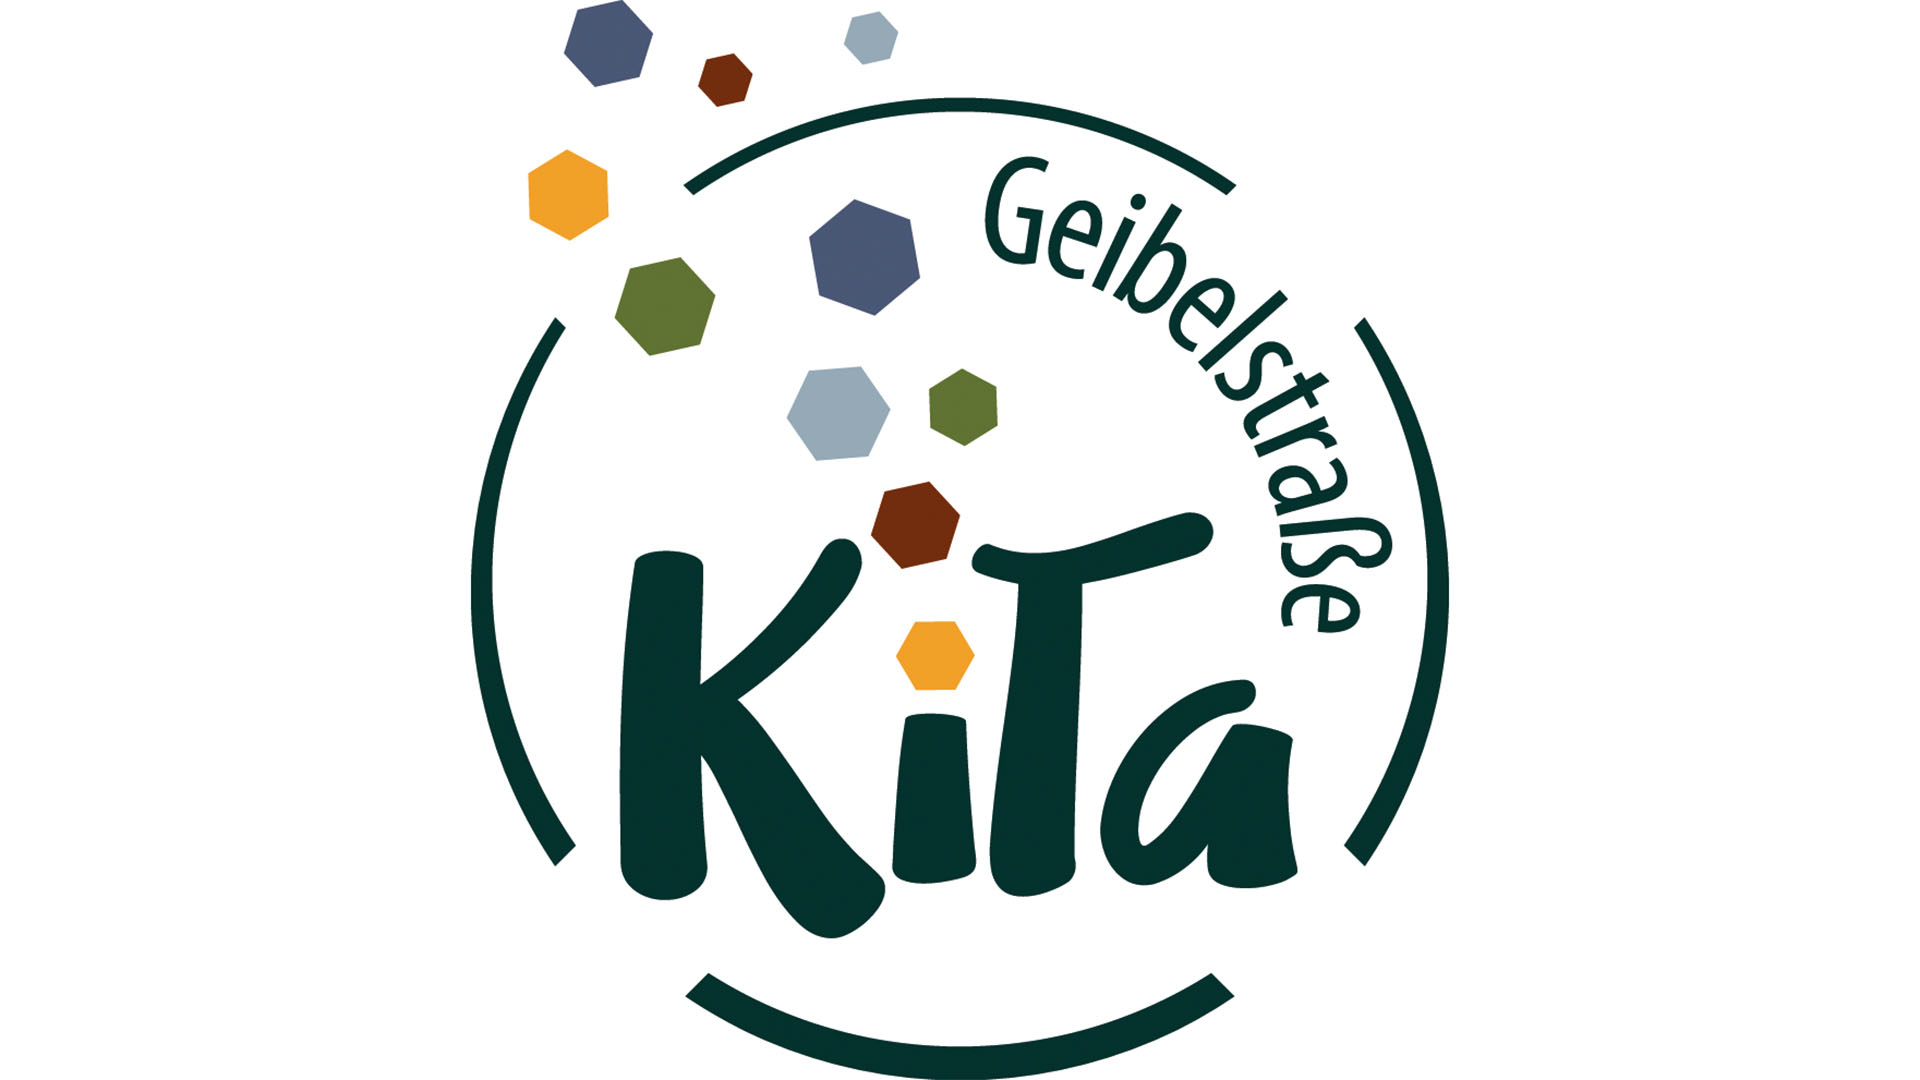 In einem Kreis stehen die Wörter KiTa und Geibelstraße. Aus dem "I" in Kita sprühen mehrere bunte Sechsecke.